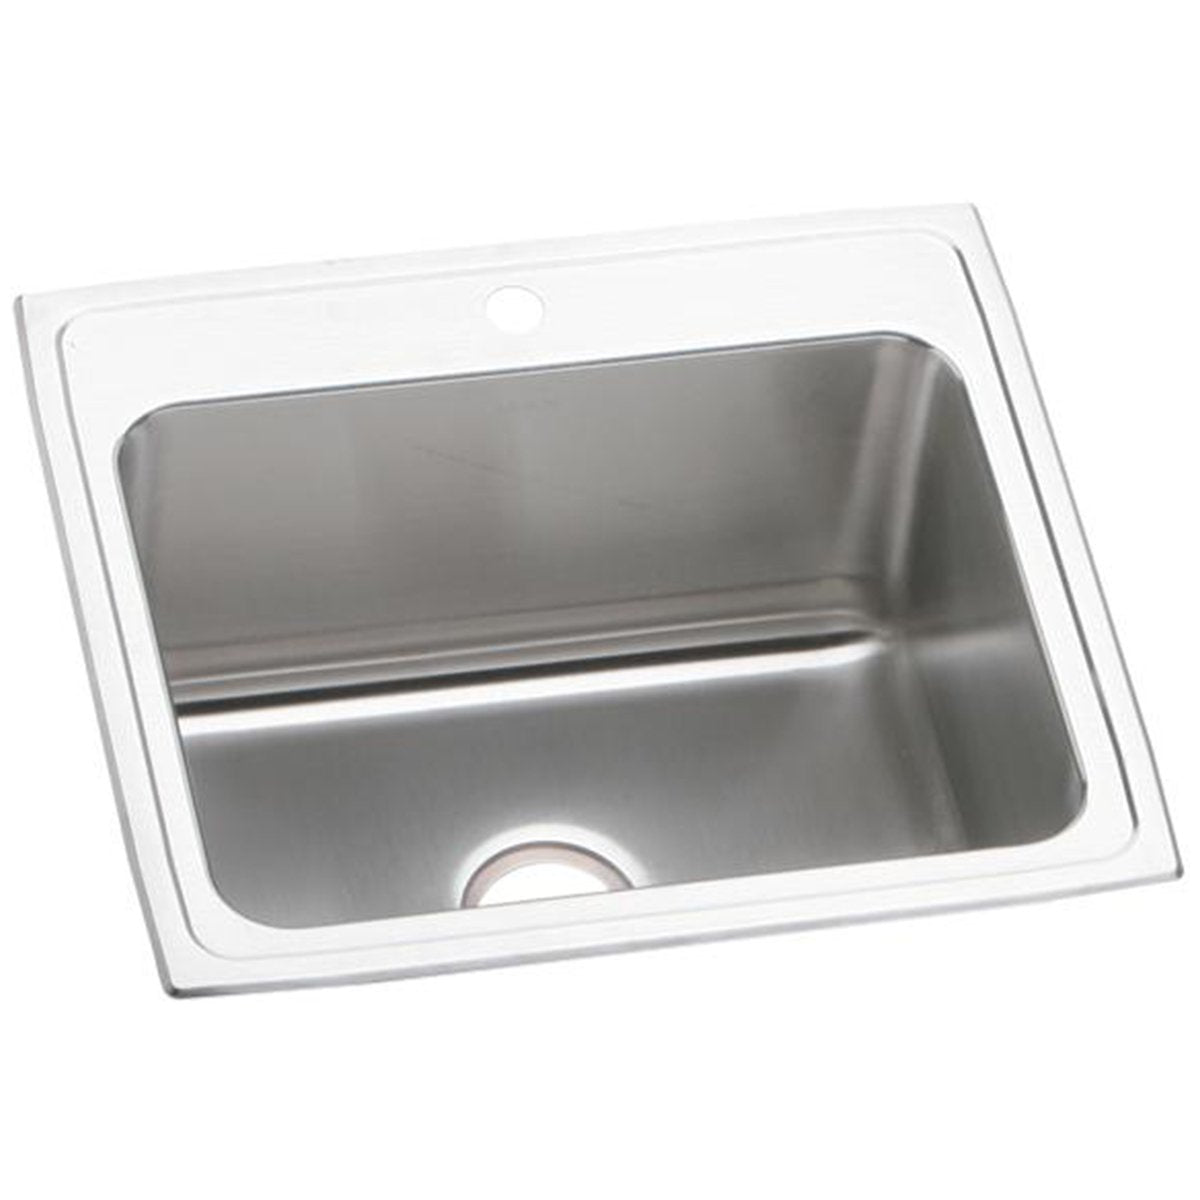 Elkay Lustertone Classic 25" x 21-1/4" x 10-1/8" Single Bowl Drop-in Stainless Steel Sink